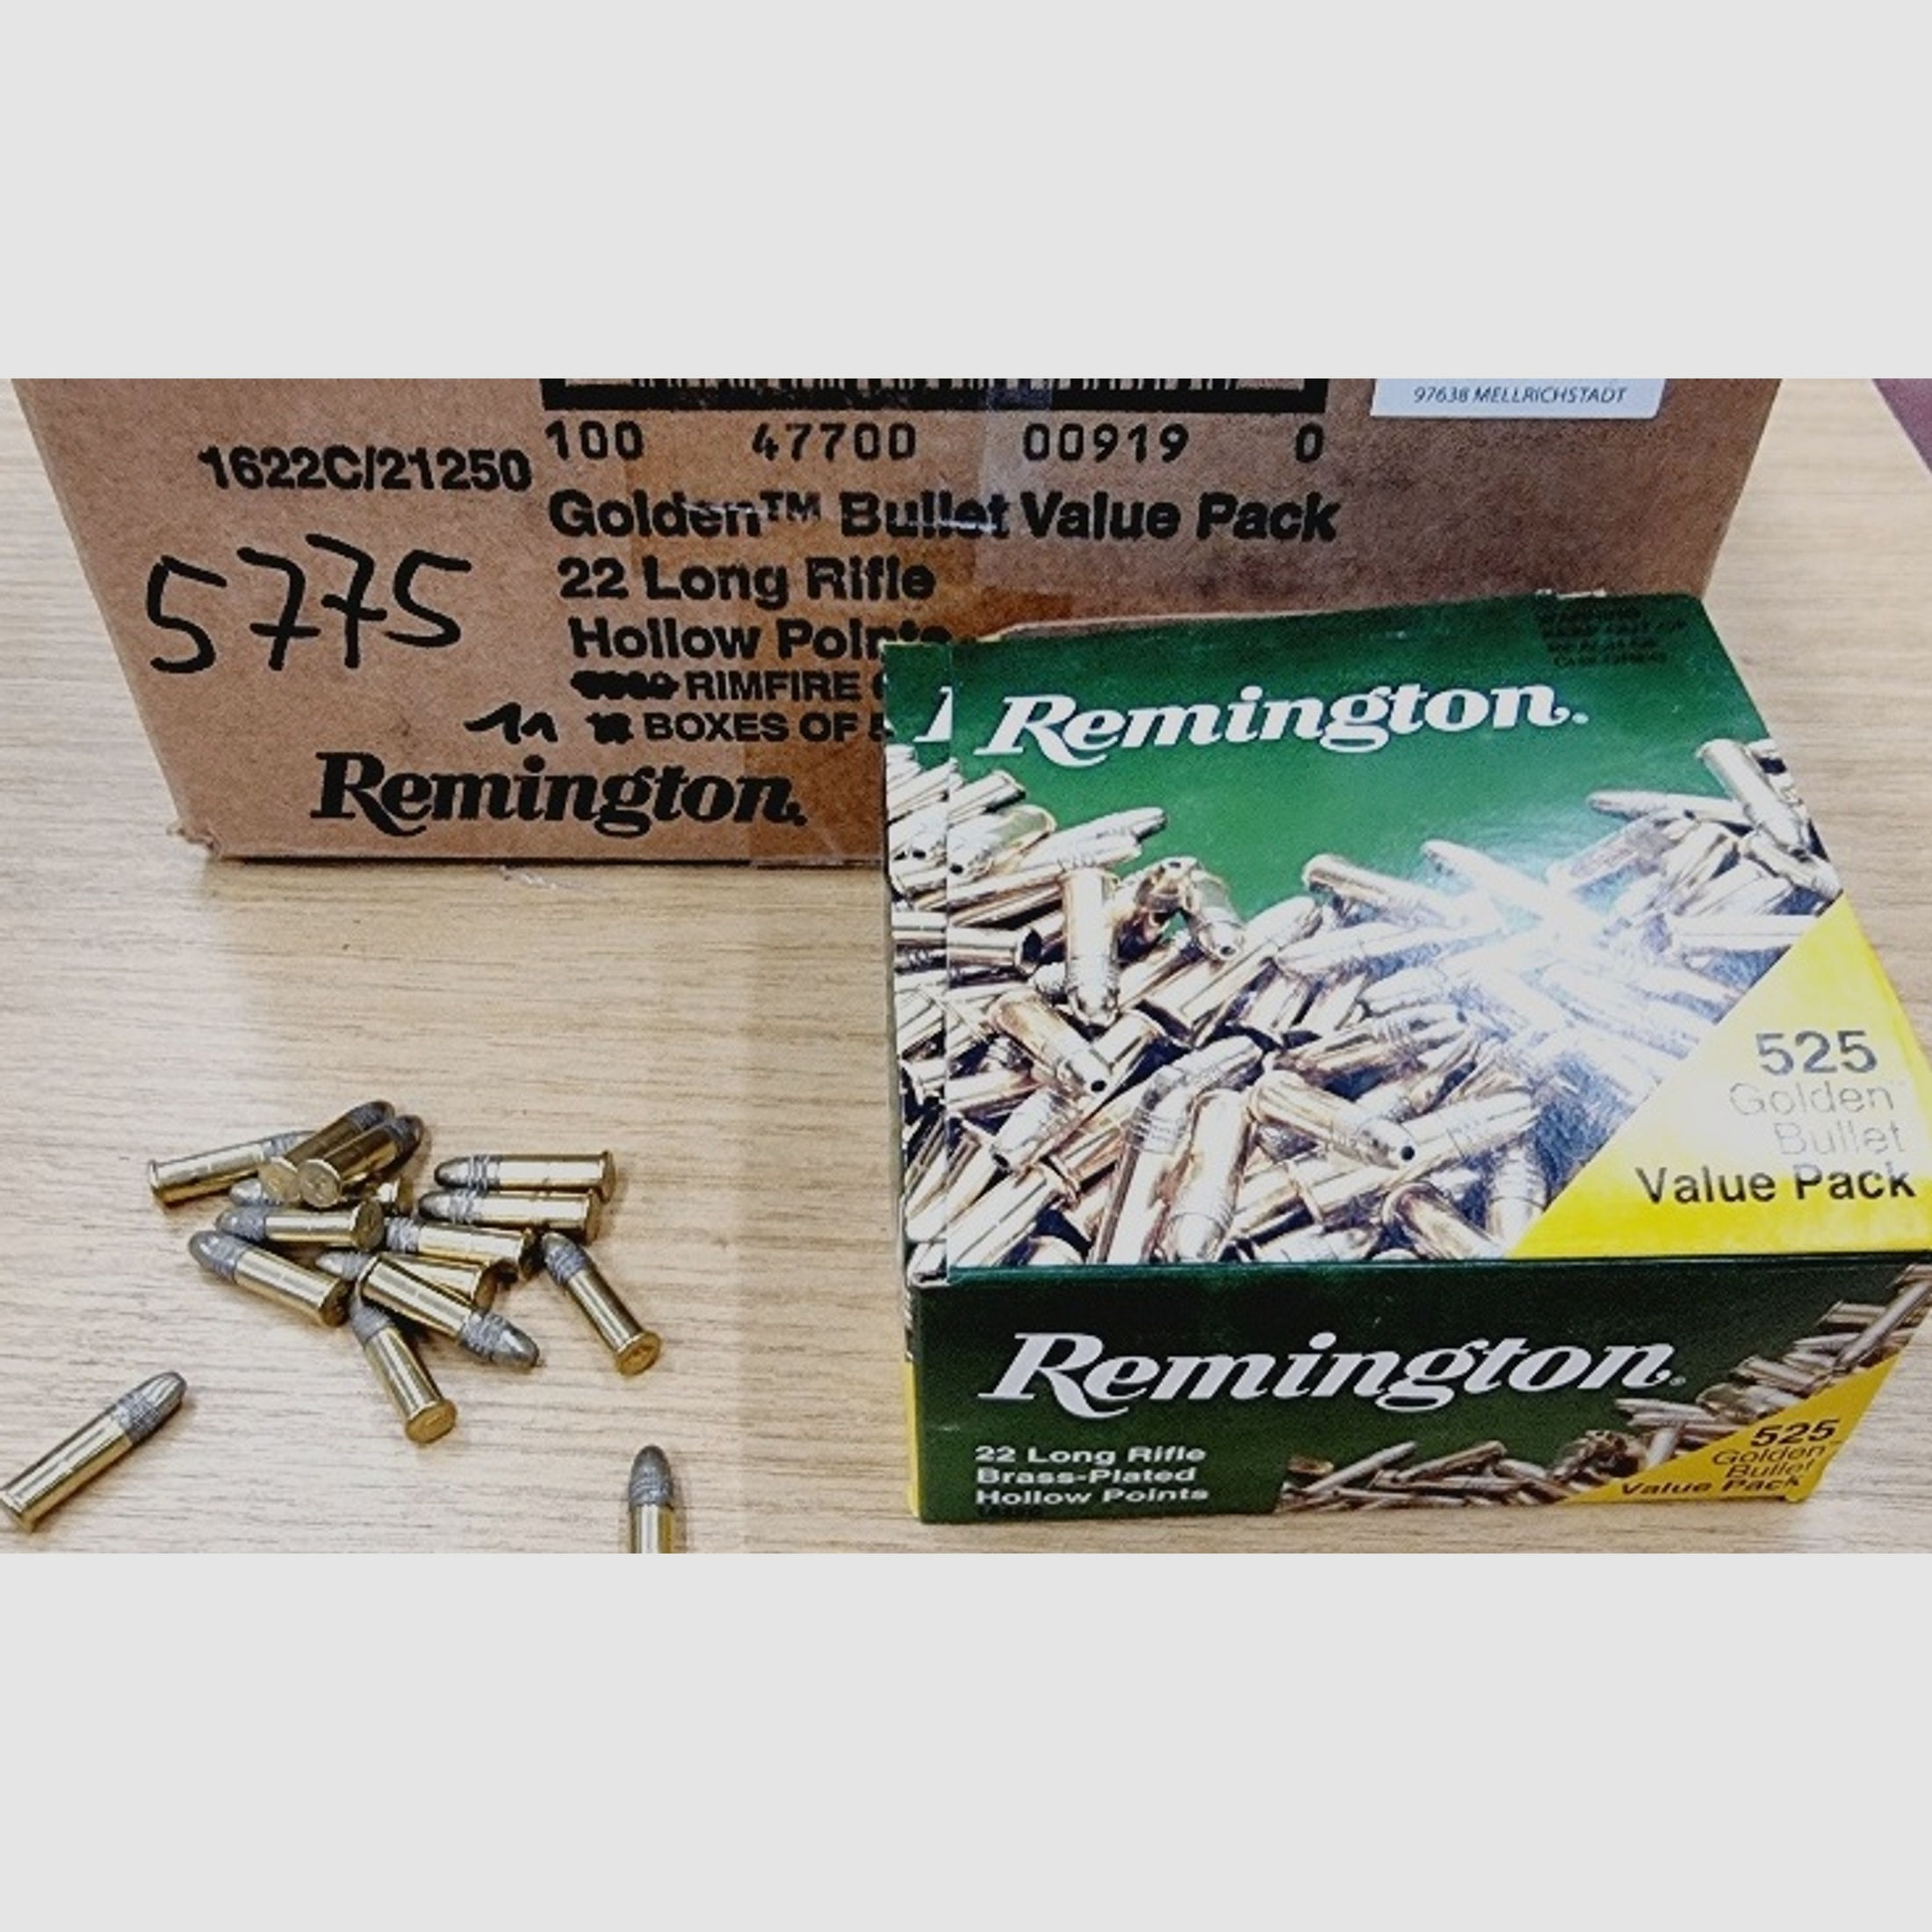 .22LR/36grs HP Remington Golden Bullet HV verkupfert Value Pack 5775 Stk. #21250# Angebot !!